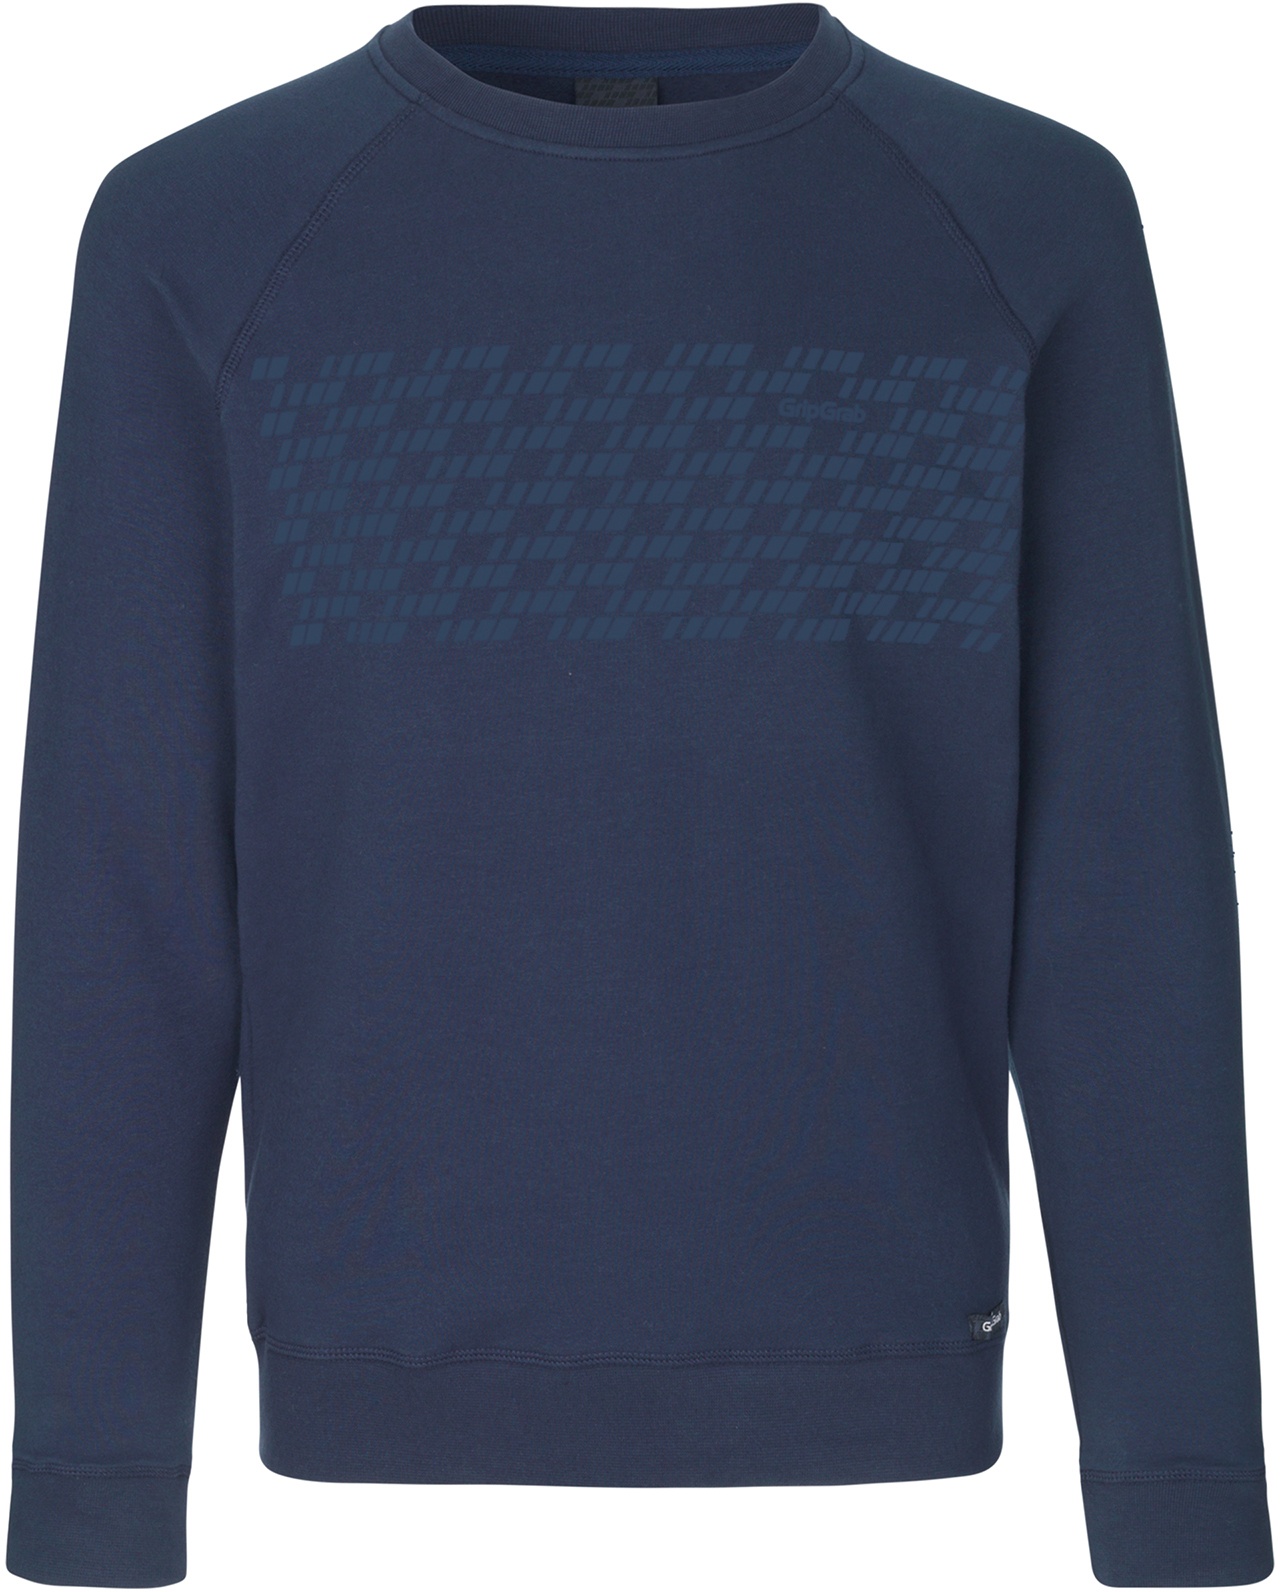 Beklædning - Merchandise - GripGrab 5th Element Langærmet Økologisk Bomuldssweatshirt - Blå